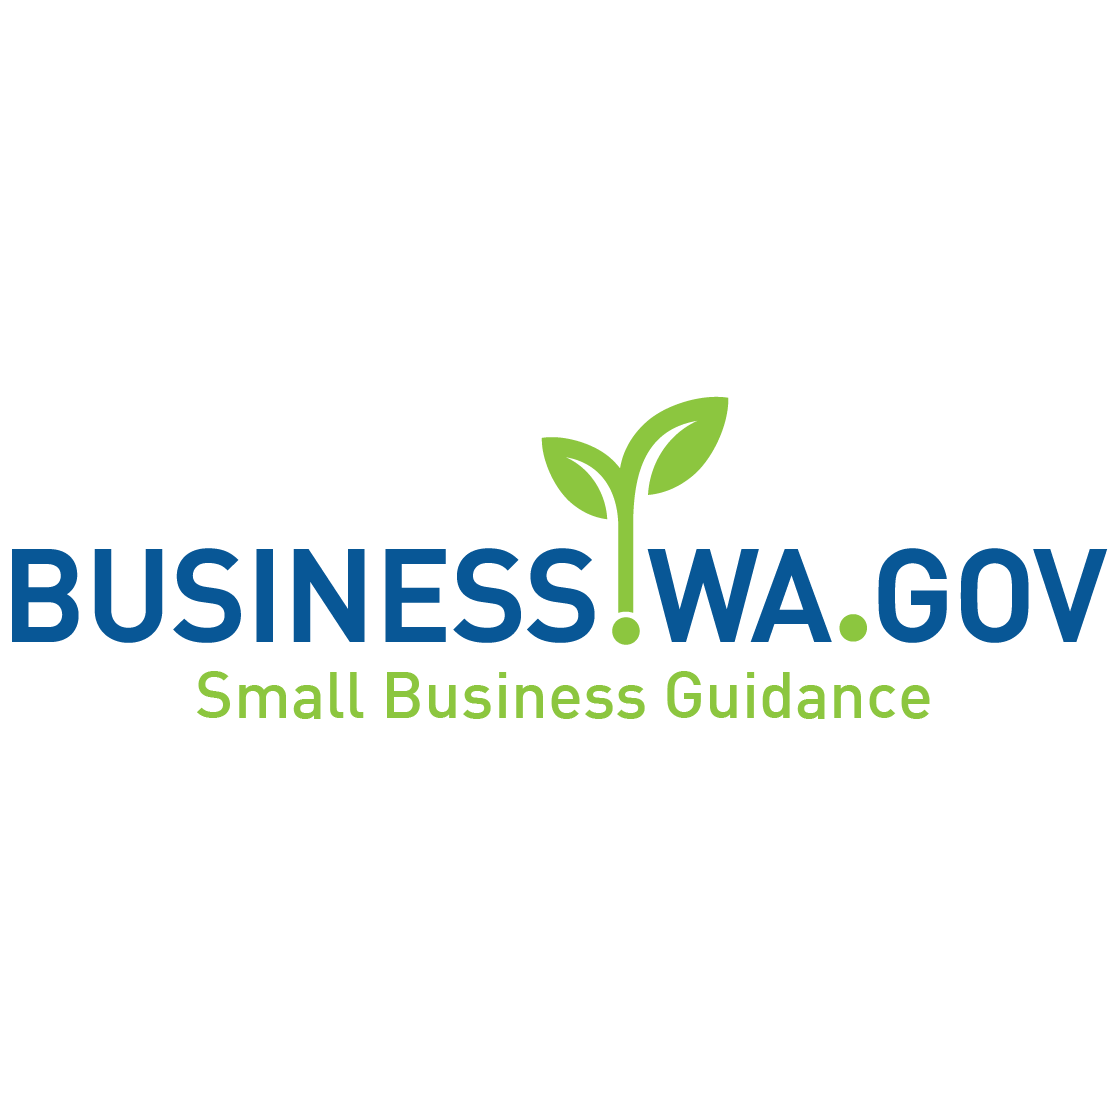 Image of Business Washington logo